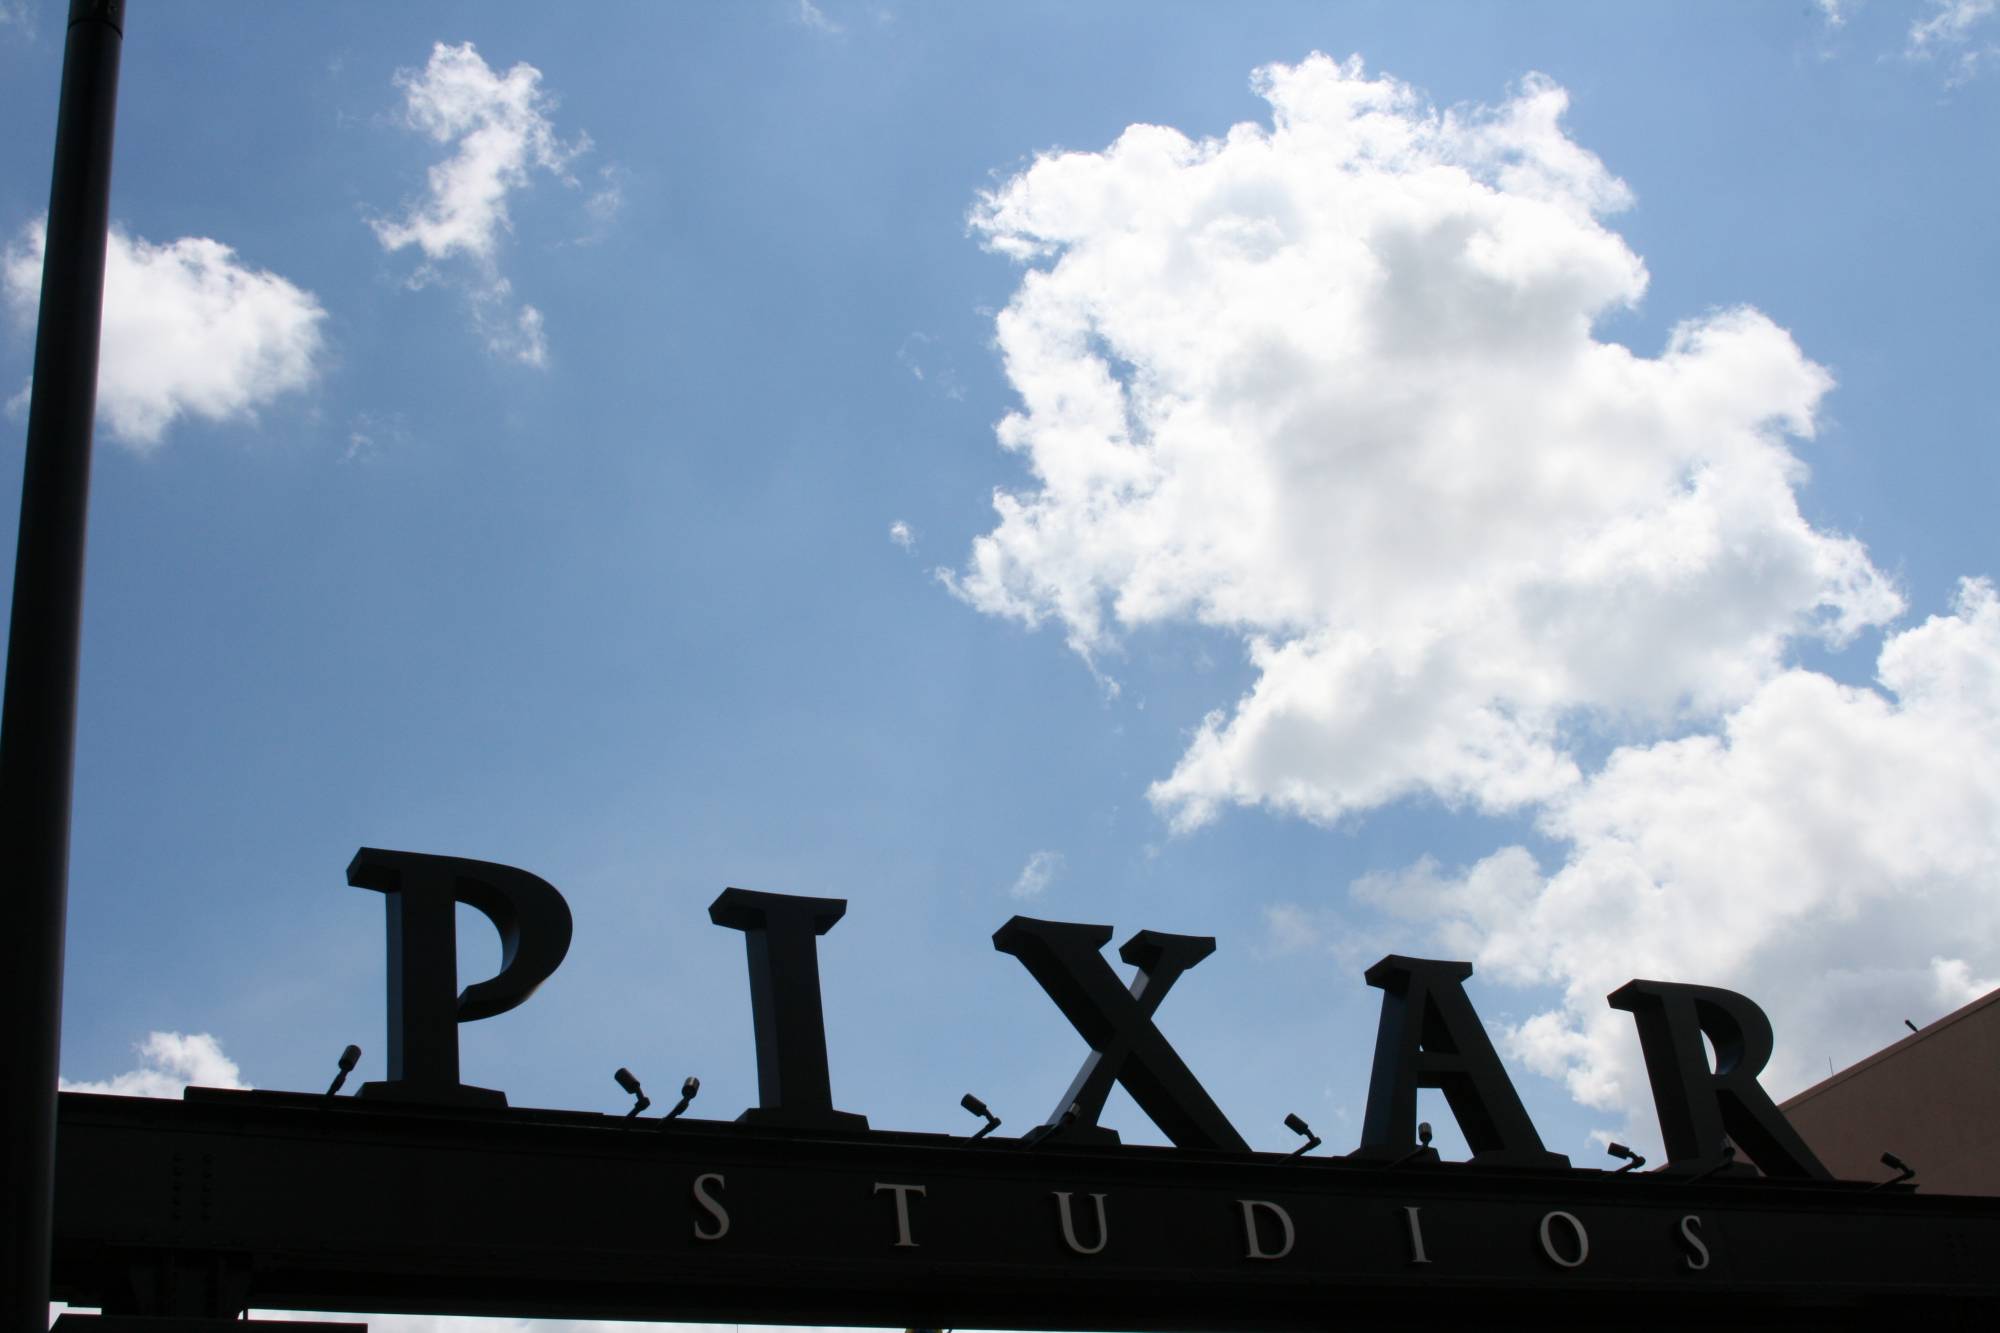 Pixar Sign